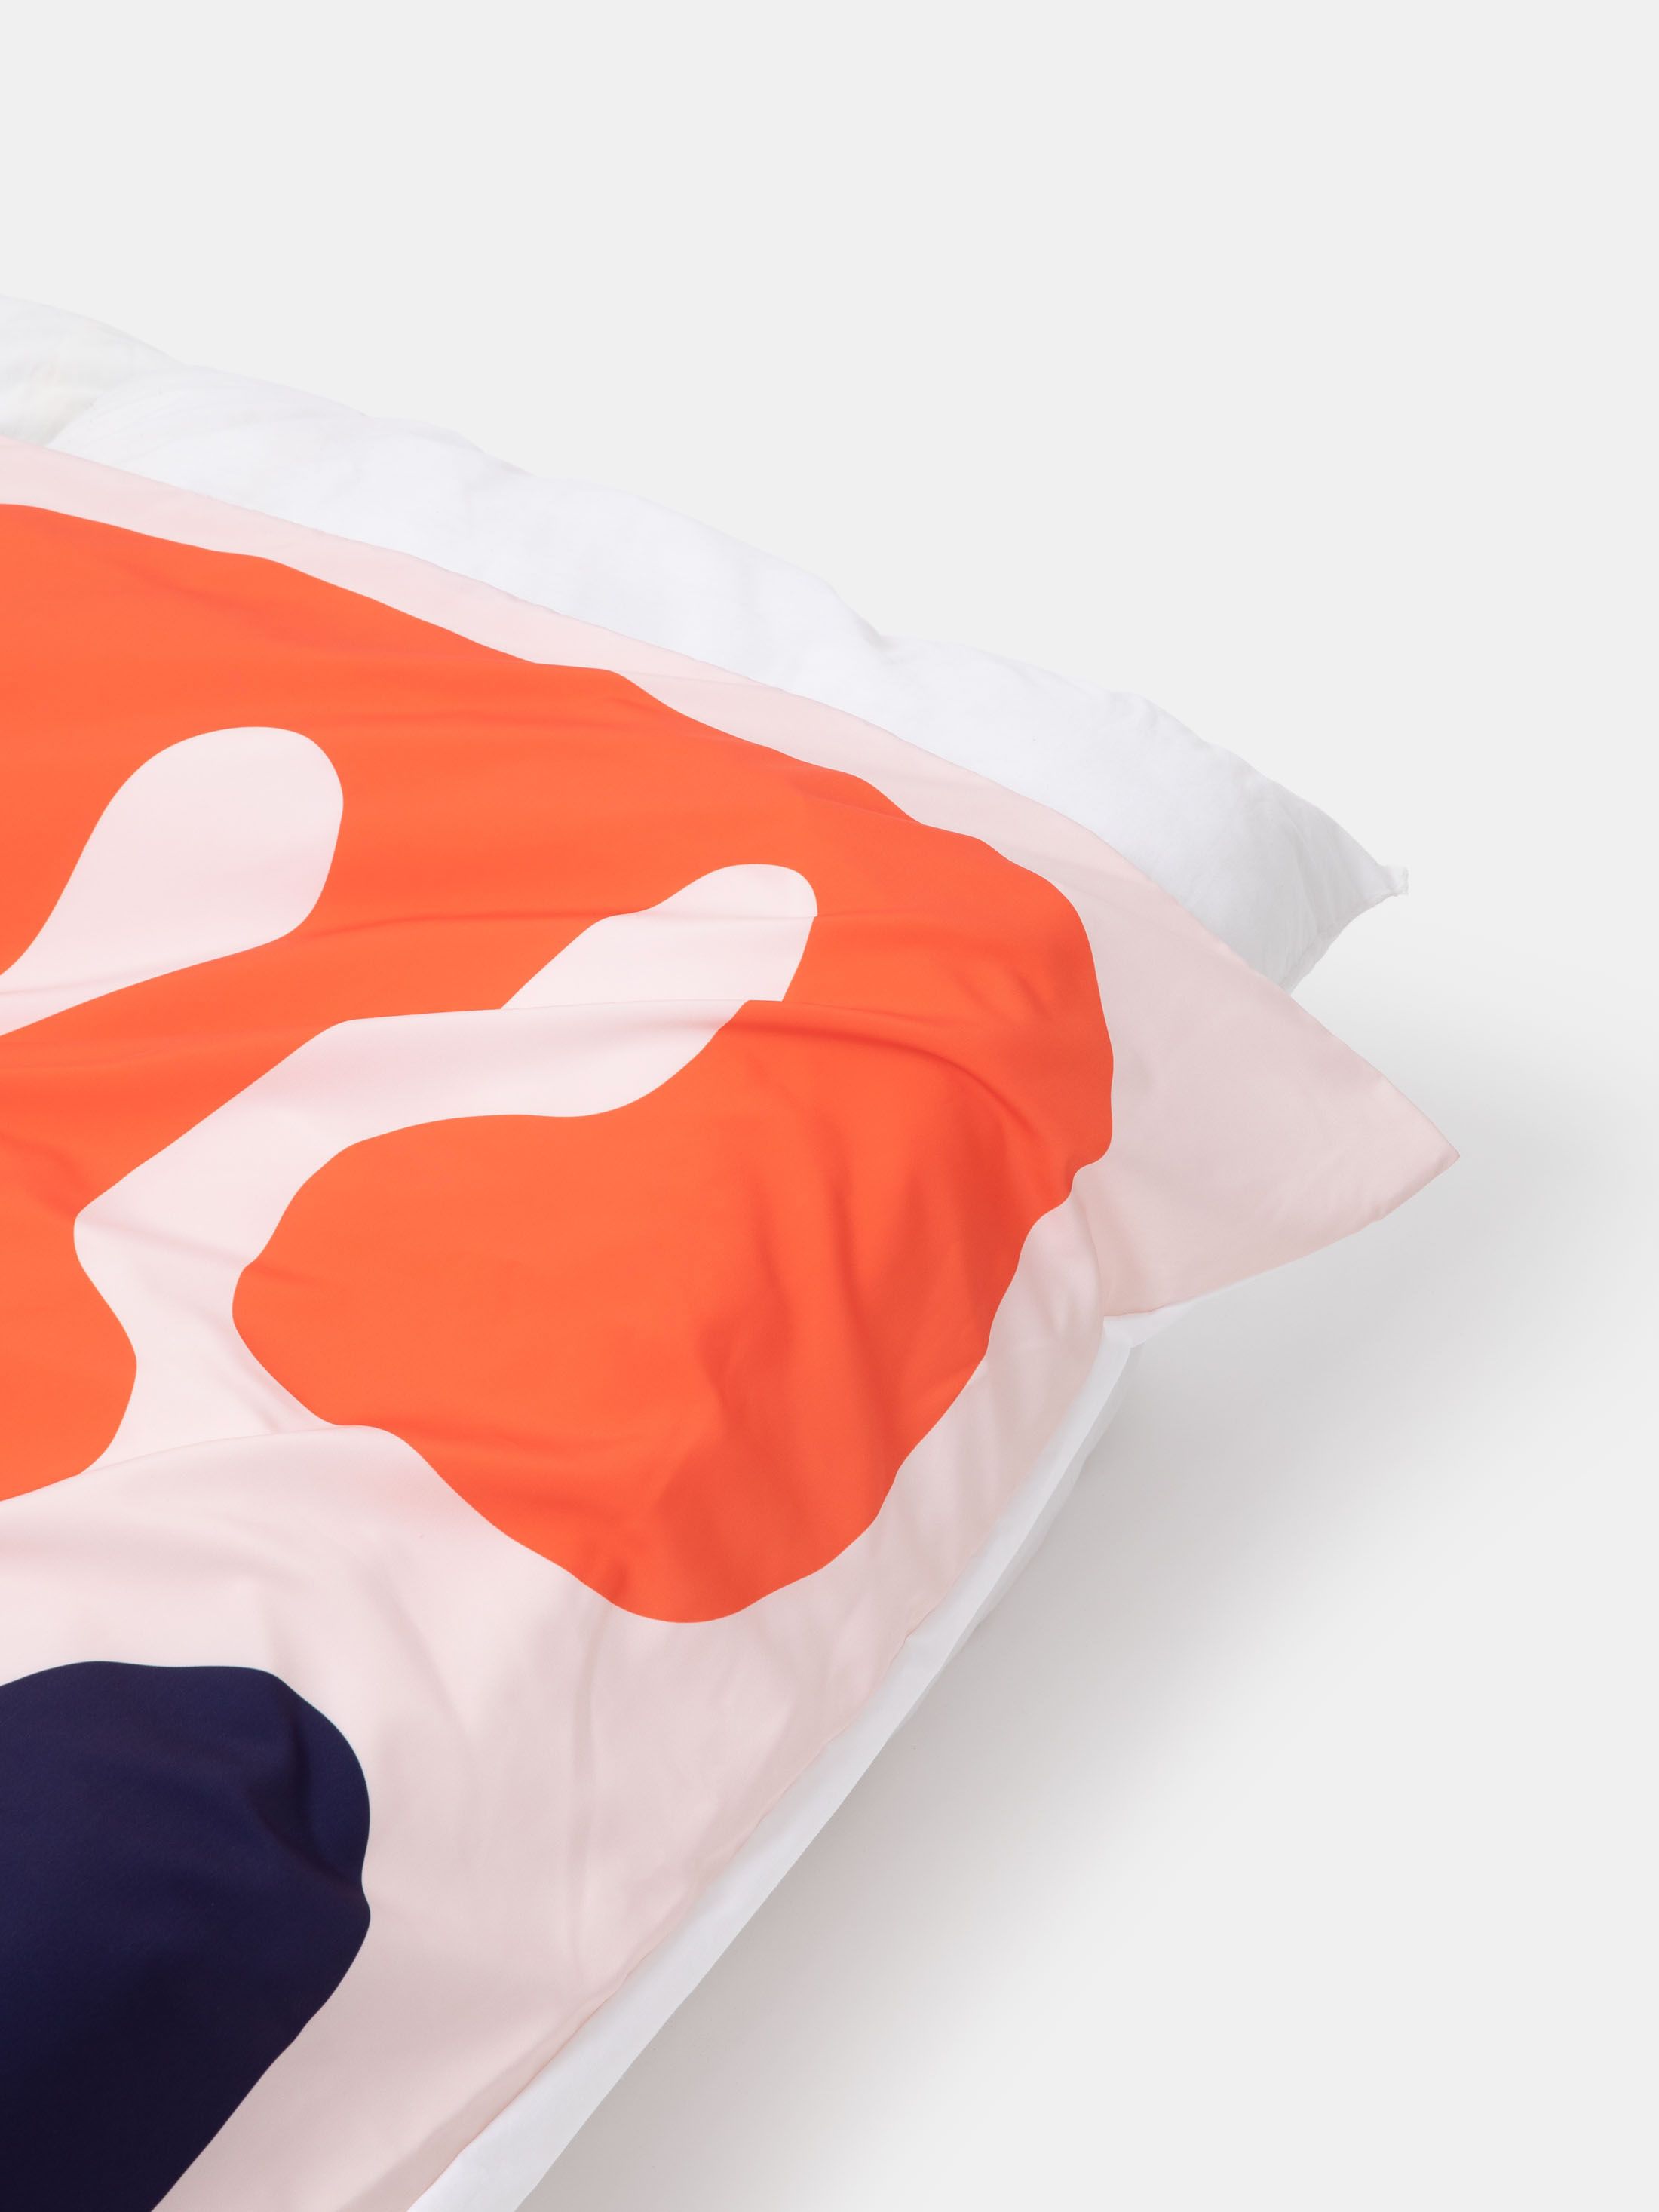 design duvet covers for bedroom